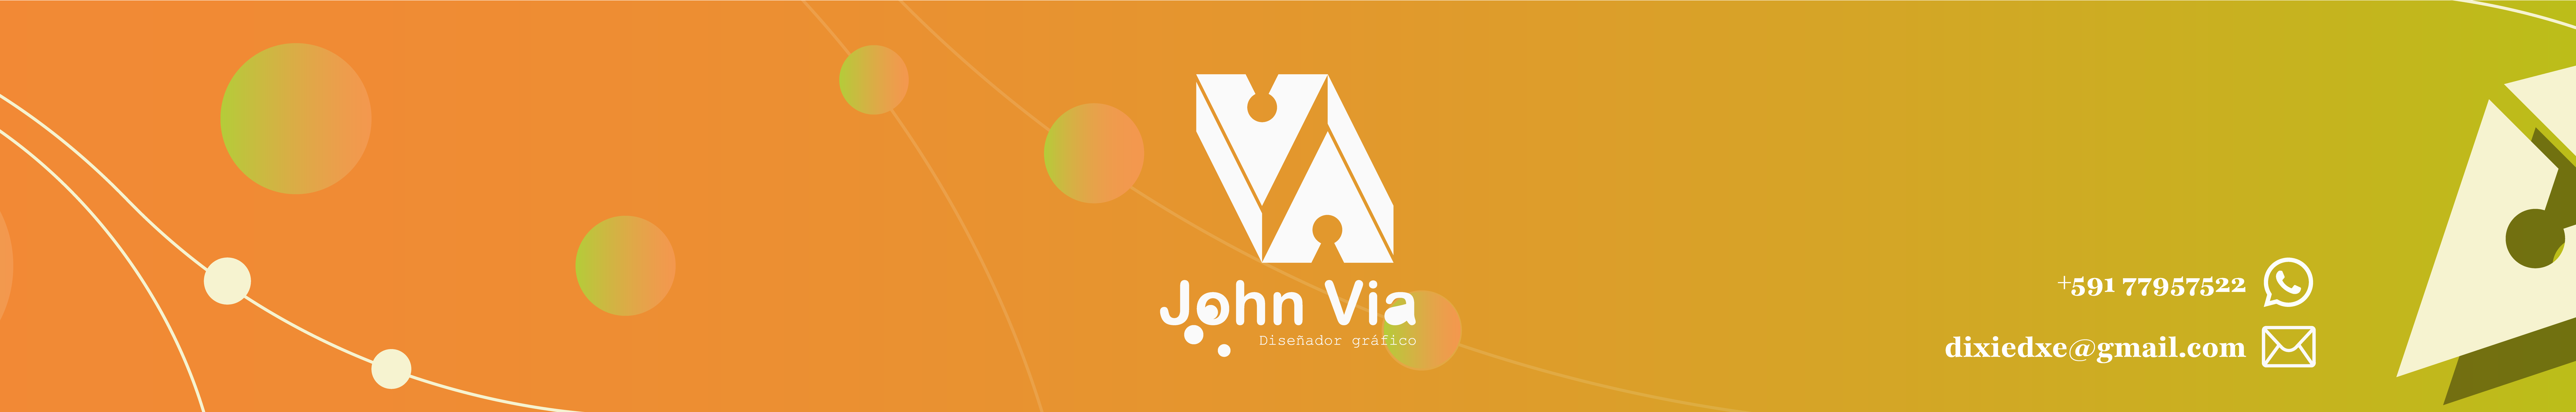 John Vias profilbanner